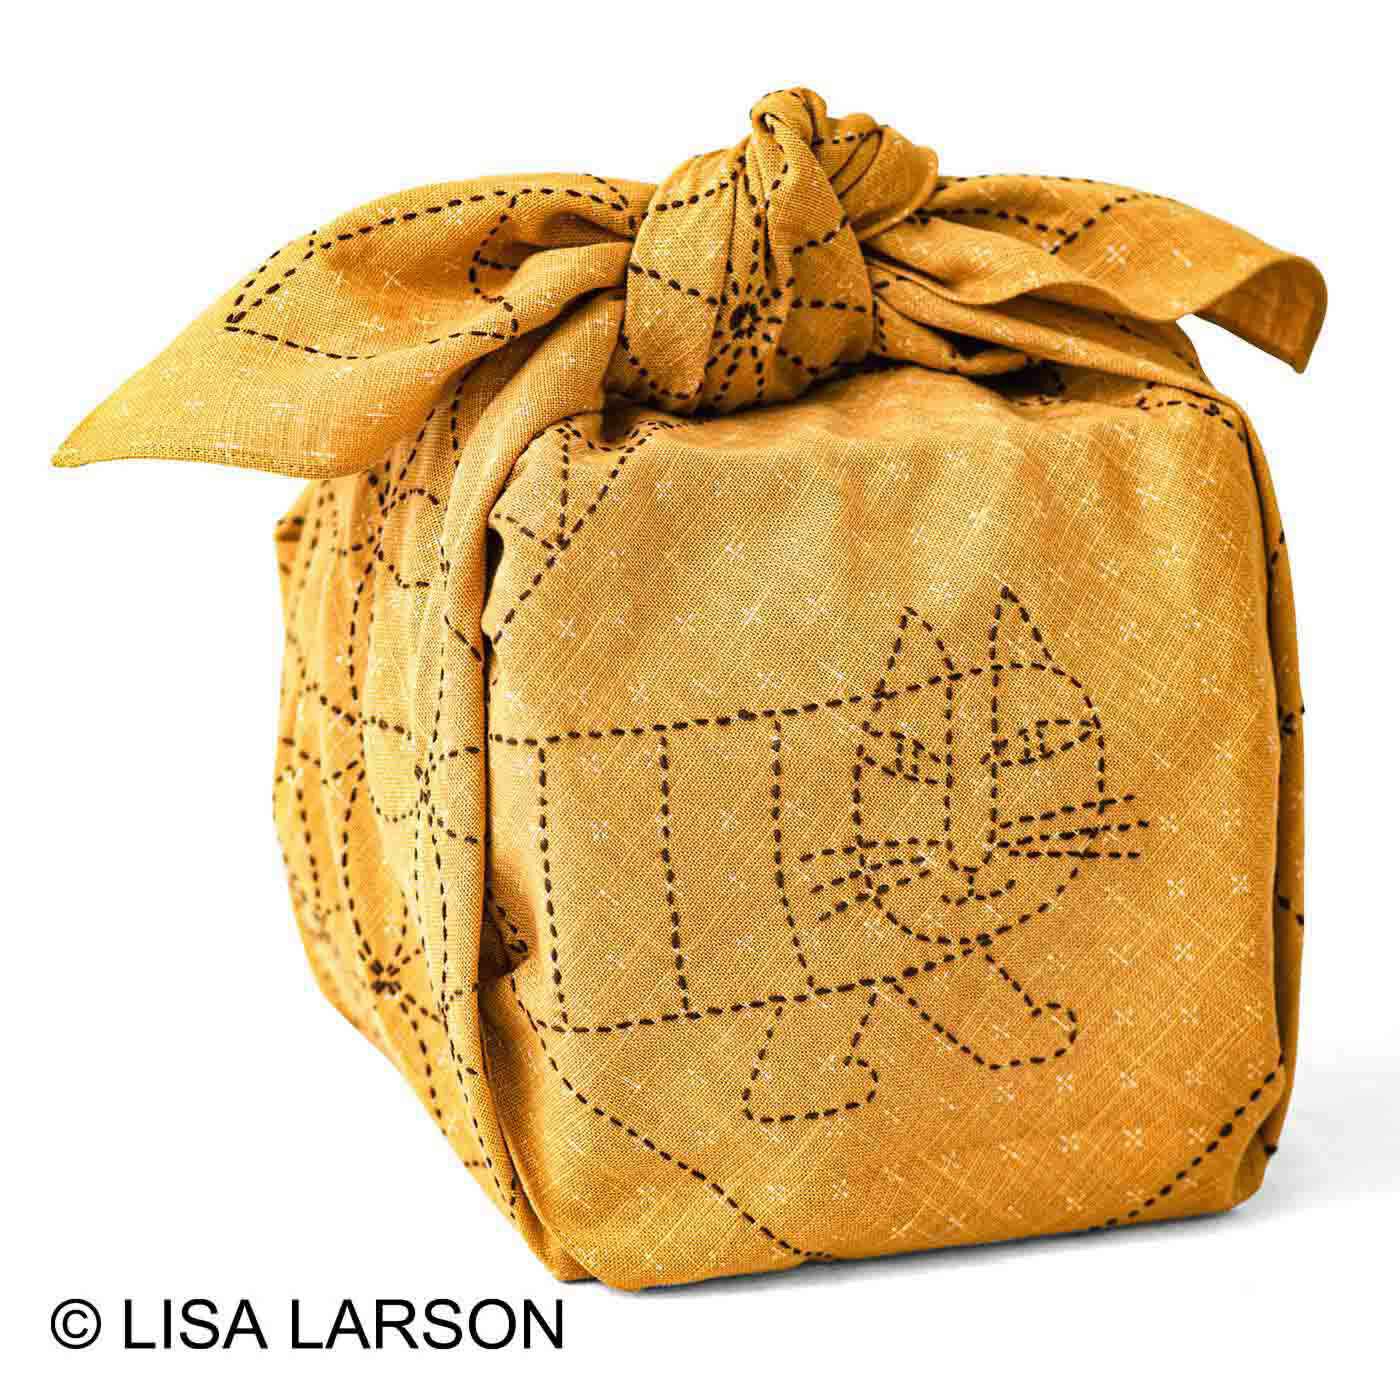 クチュリエ|クチュリエ×リサ・ラーソン 縫製済みがうれしい ちくちく刺し子の大判風呂敷（黄）|重箱やスイカもらくらく包めます。